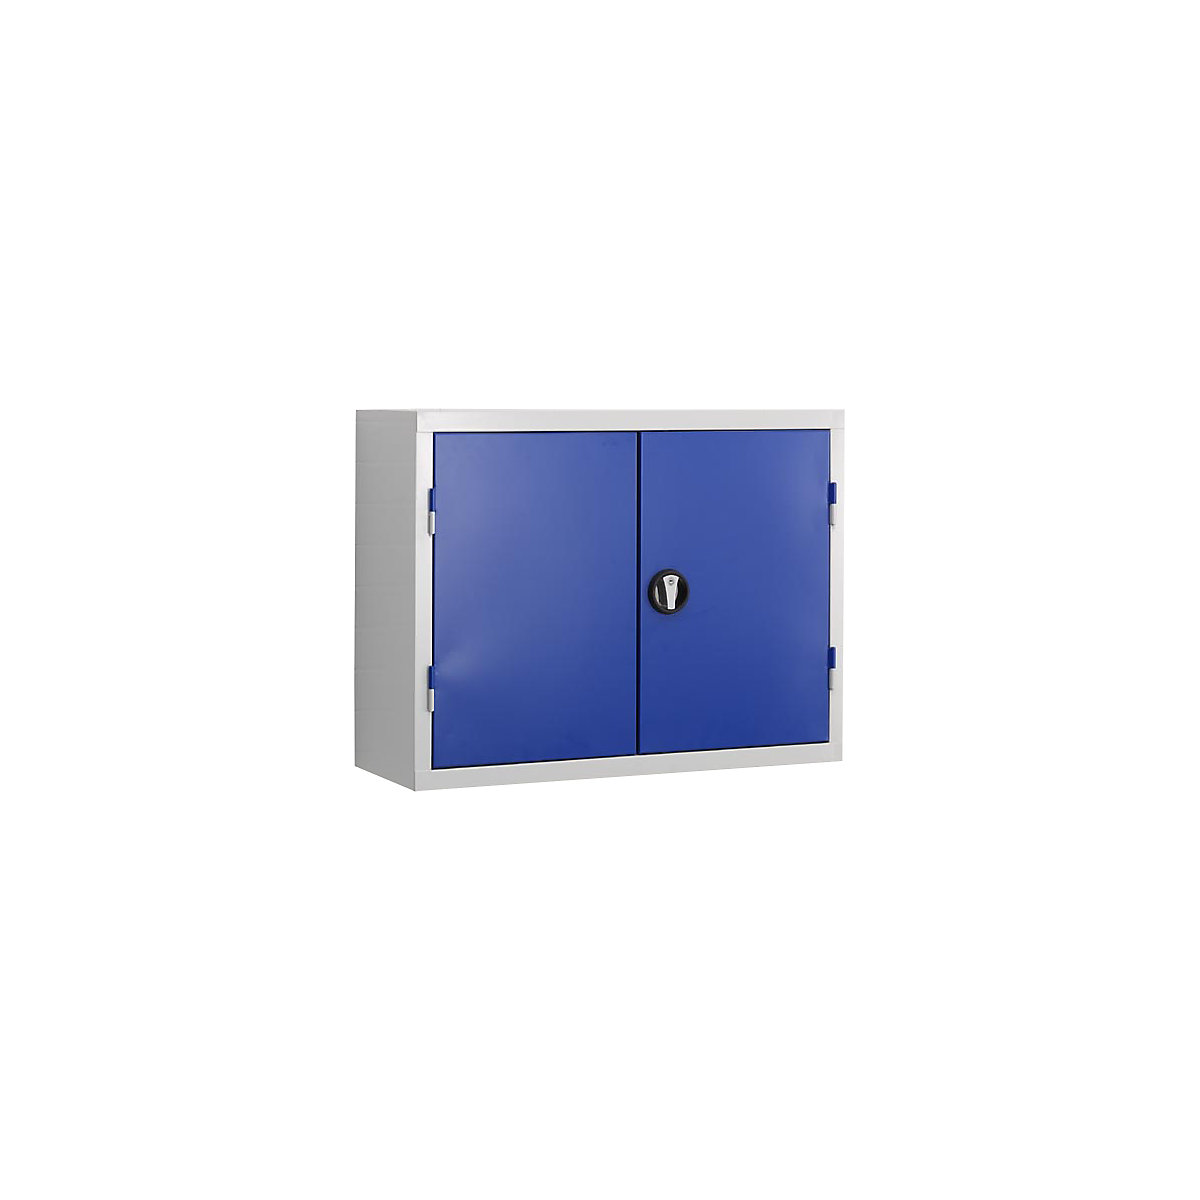 Gereedschapshangkast, deurbinnenzijde van perforatieplaat, gentiaanblauw RAL 5010-12